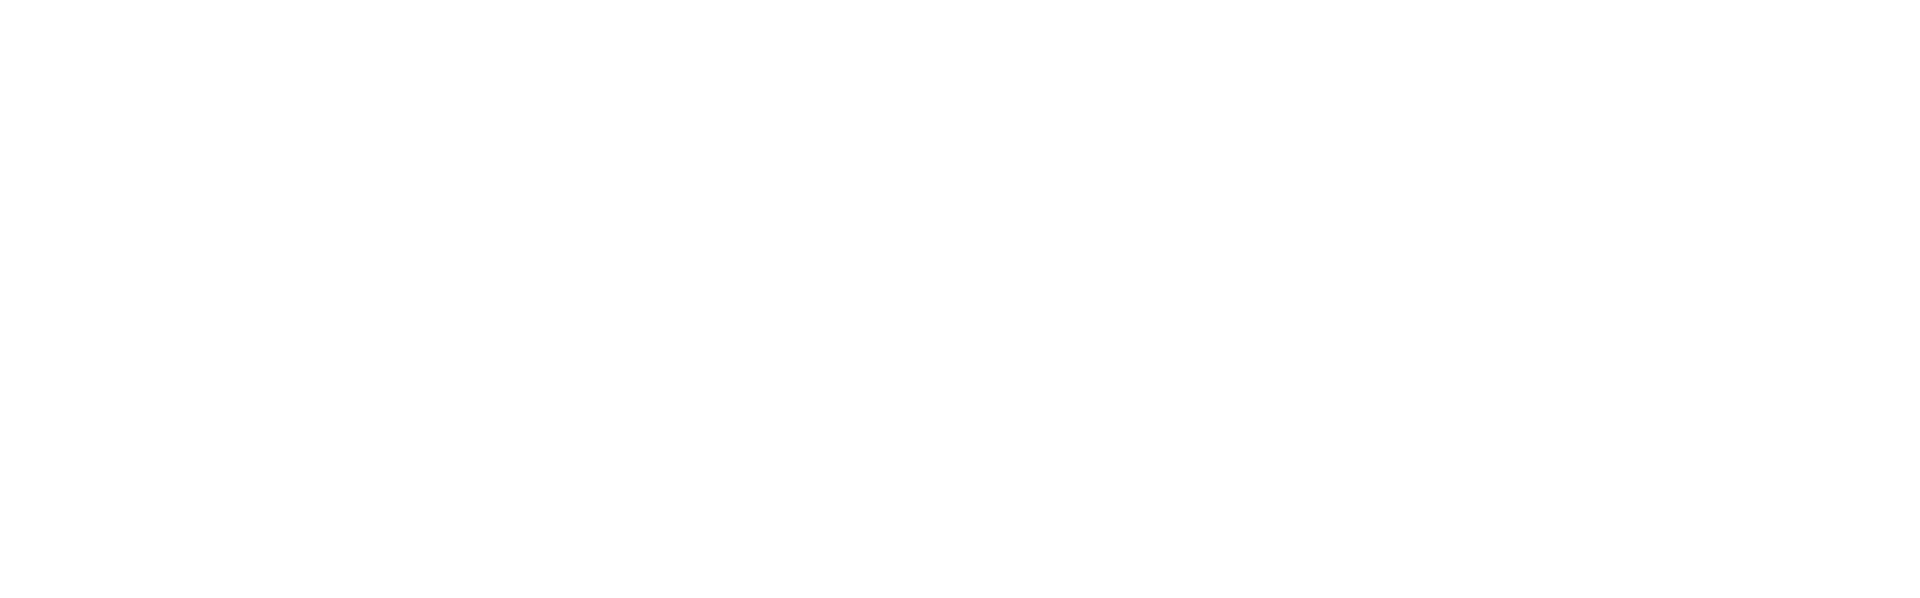 Urban League of Louisiana